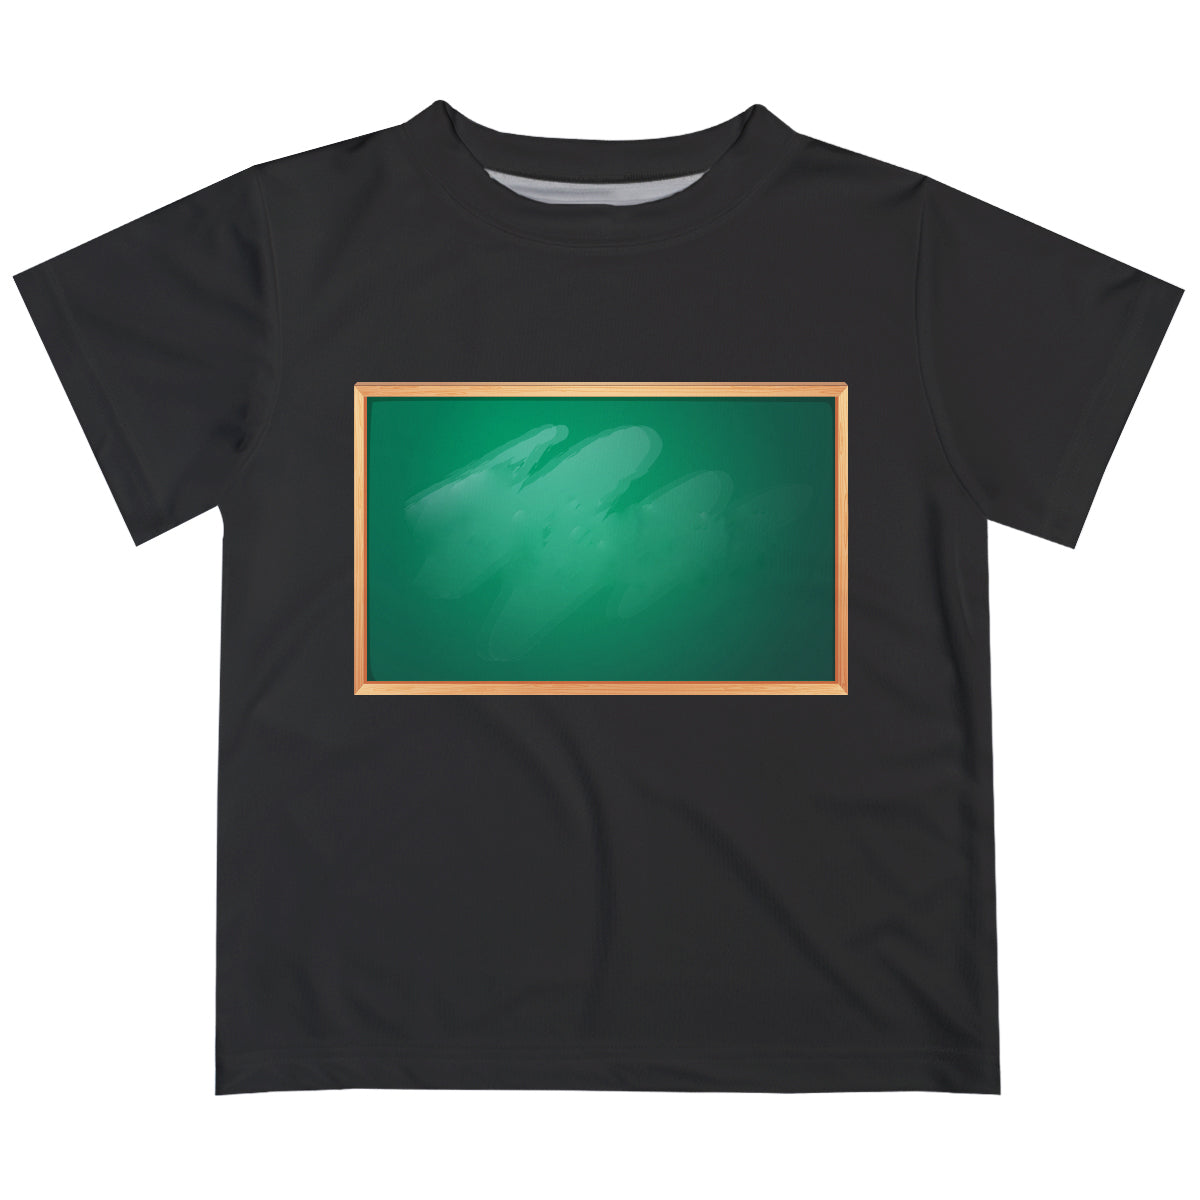 Greenboard Black Short Sleeve Tee Shirt - Wimziy&Co.